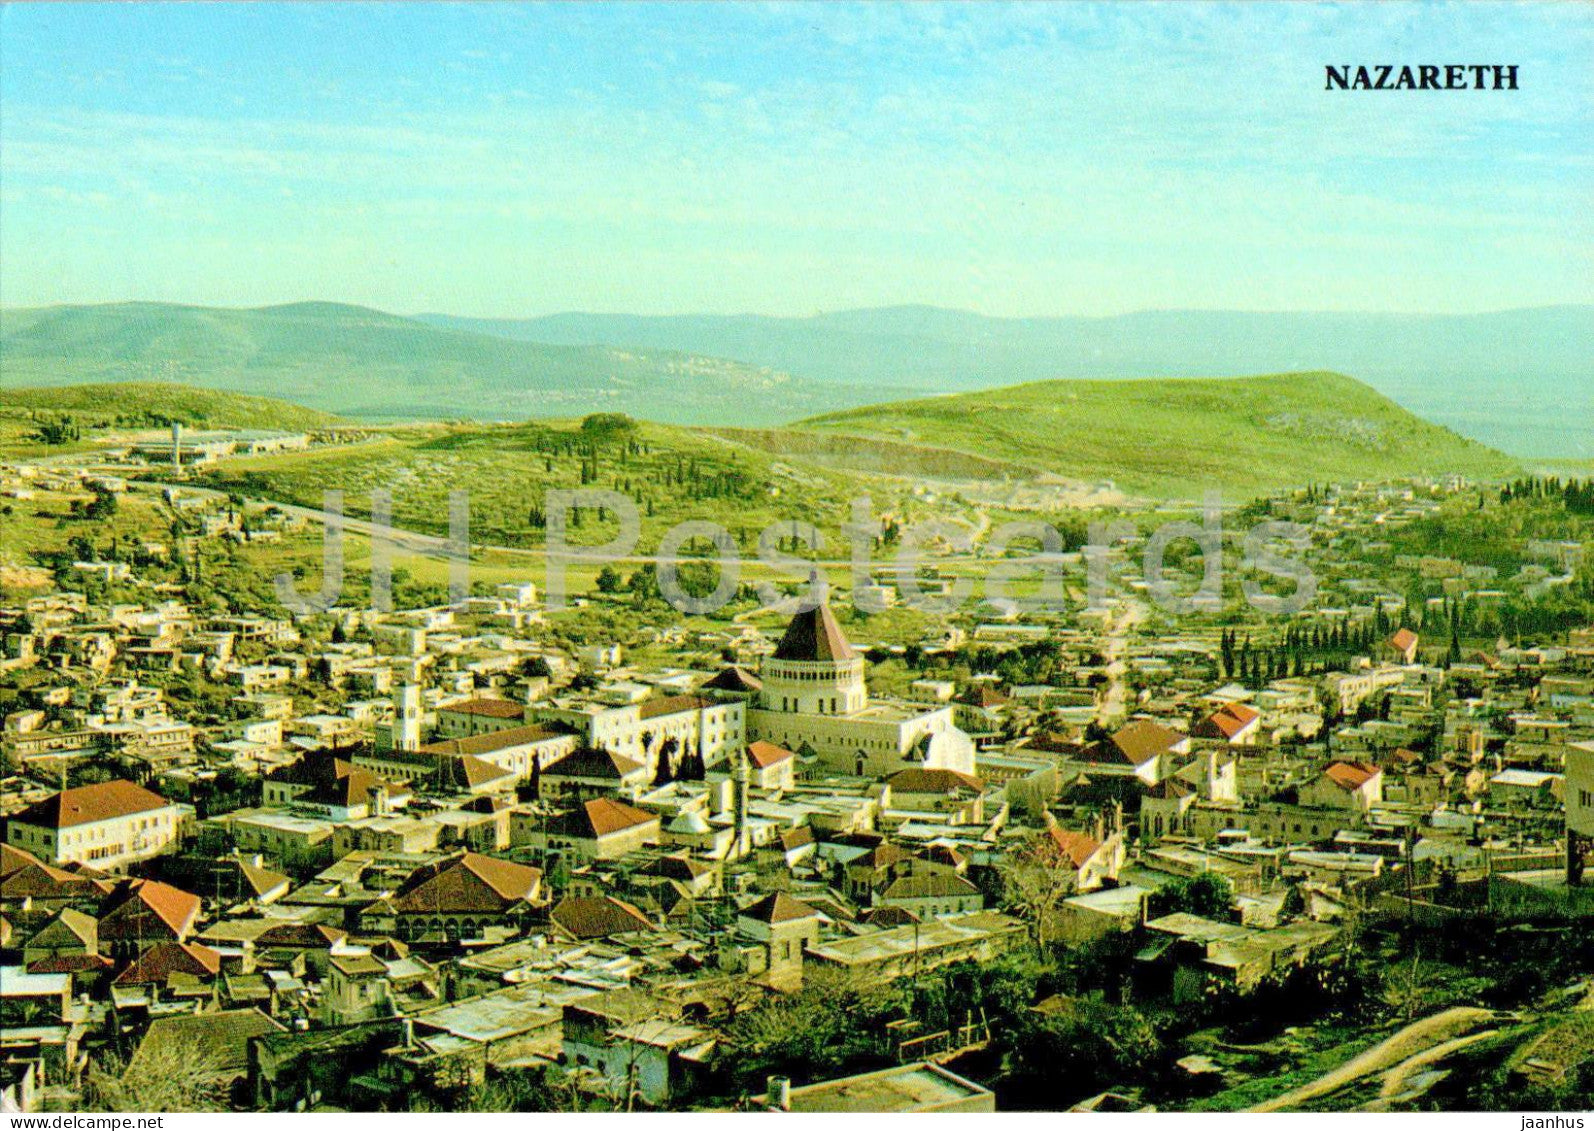 Nazareth - 9443 - Israel - unused - JH Postcards